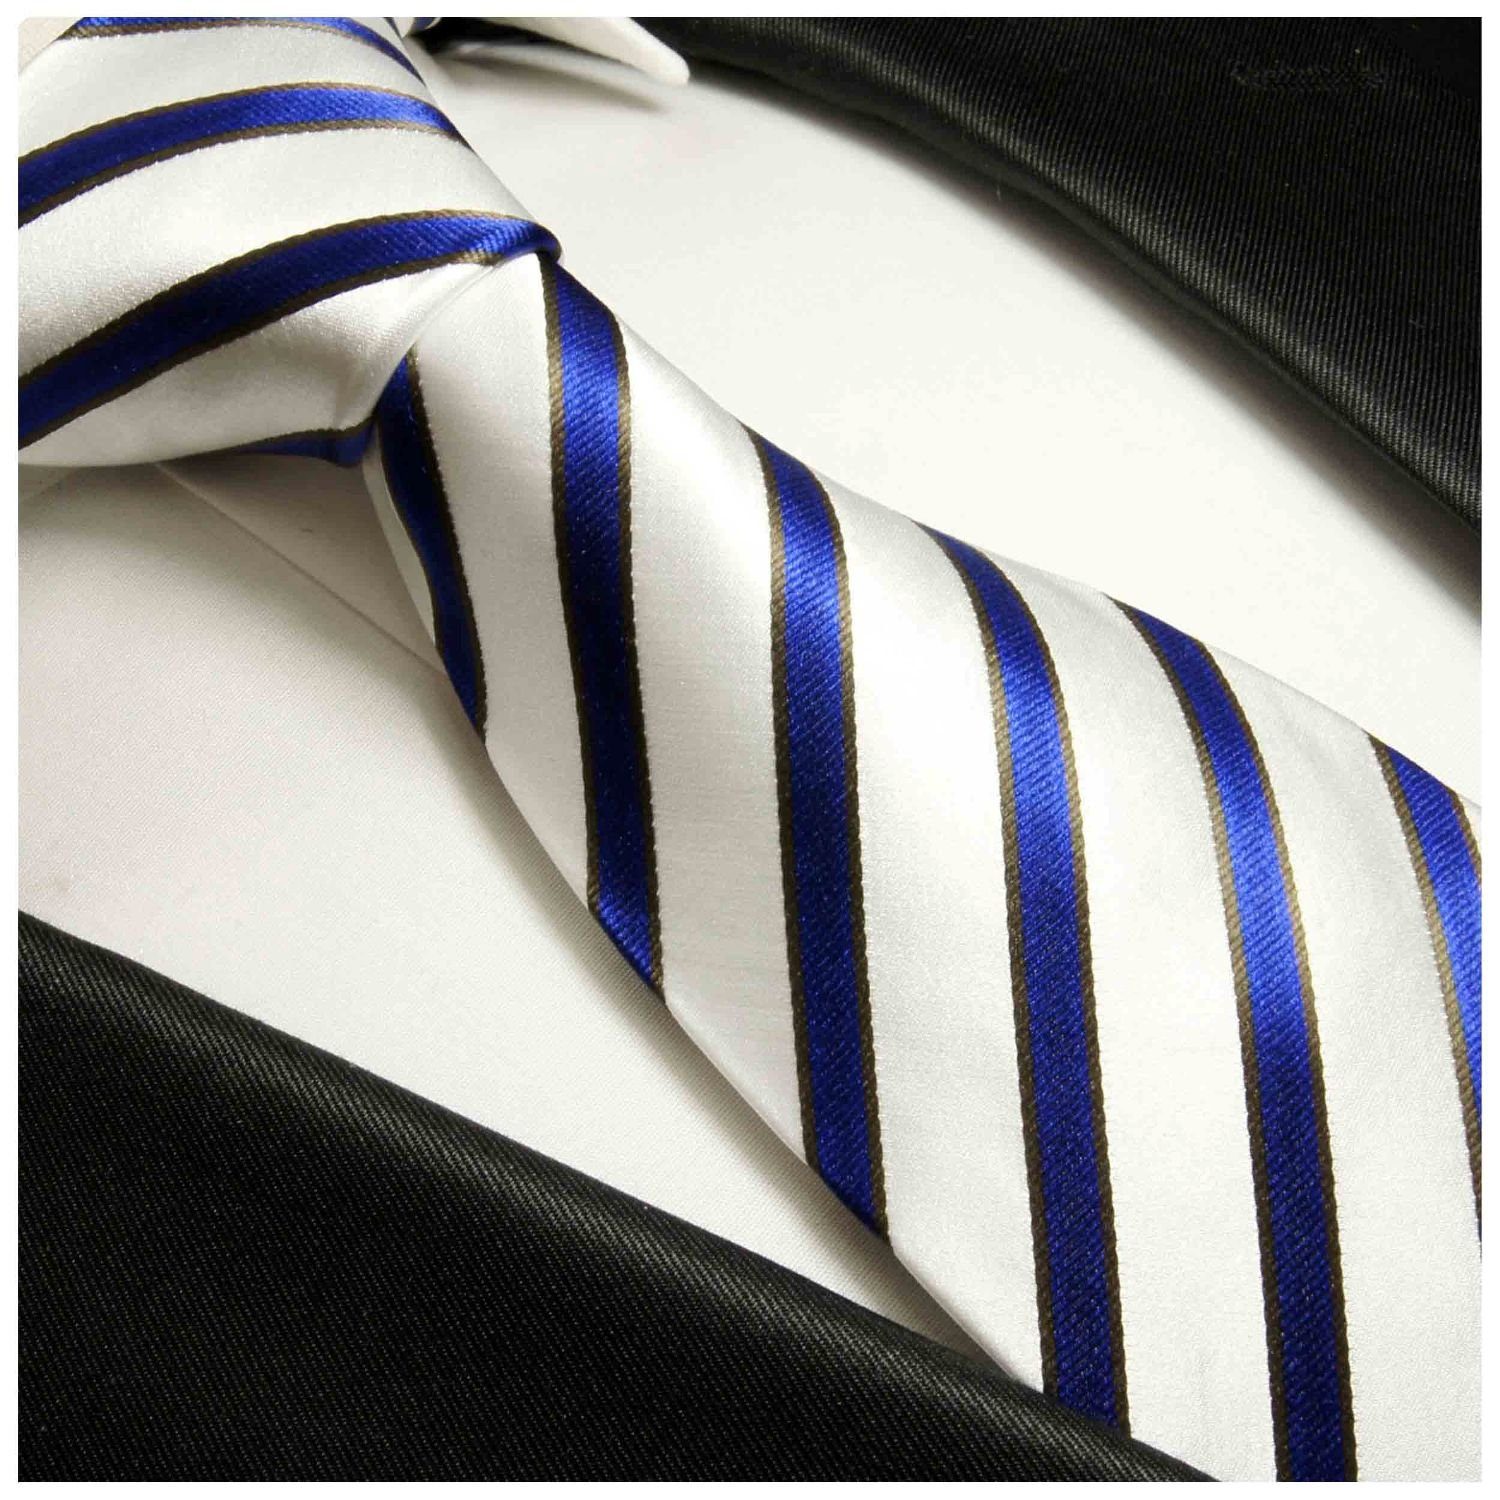 Herren Krawatten Paul Malone Krawatte Moderne Herren Seidenkrawatte gestreift 100% Seide Schmal (6cm), blau weiß 985